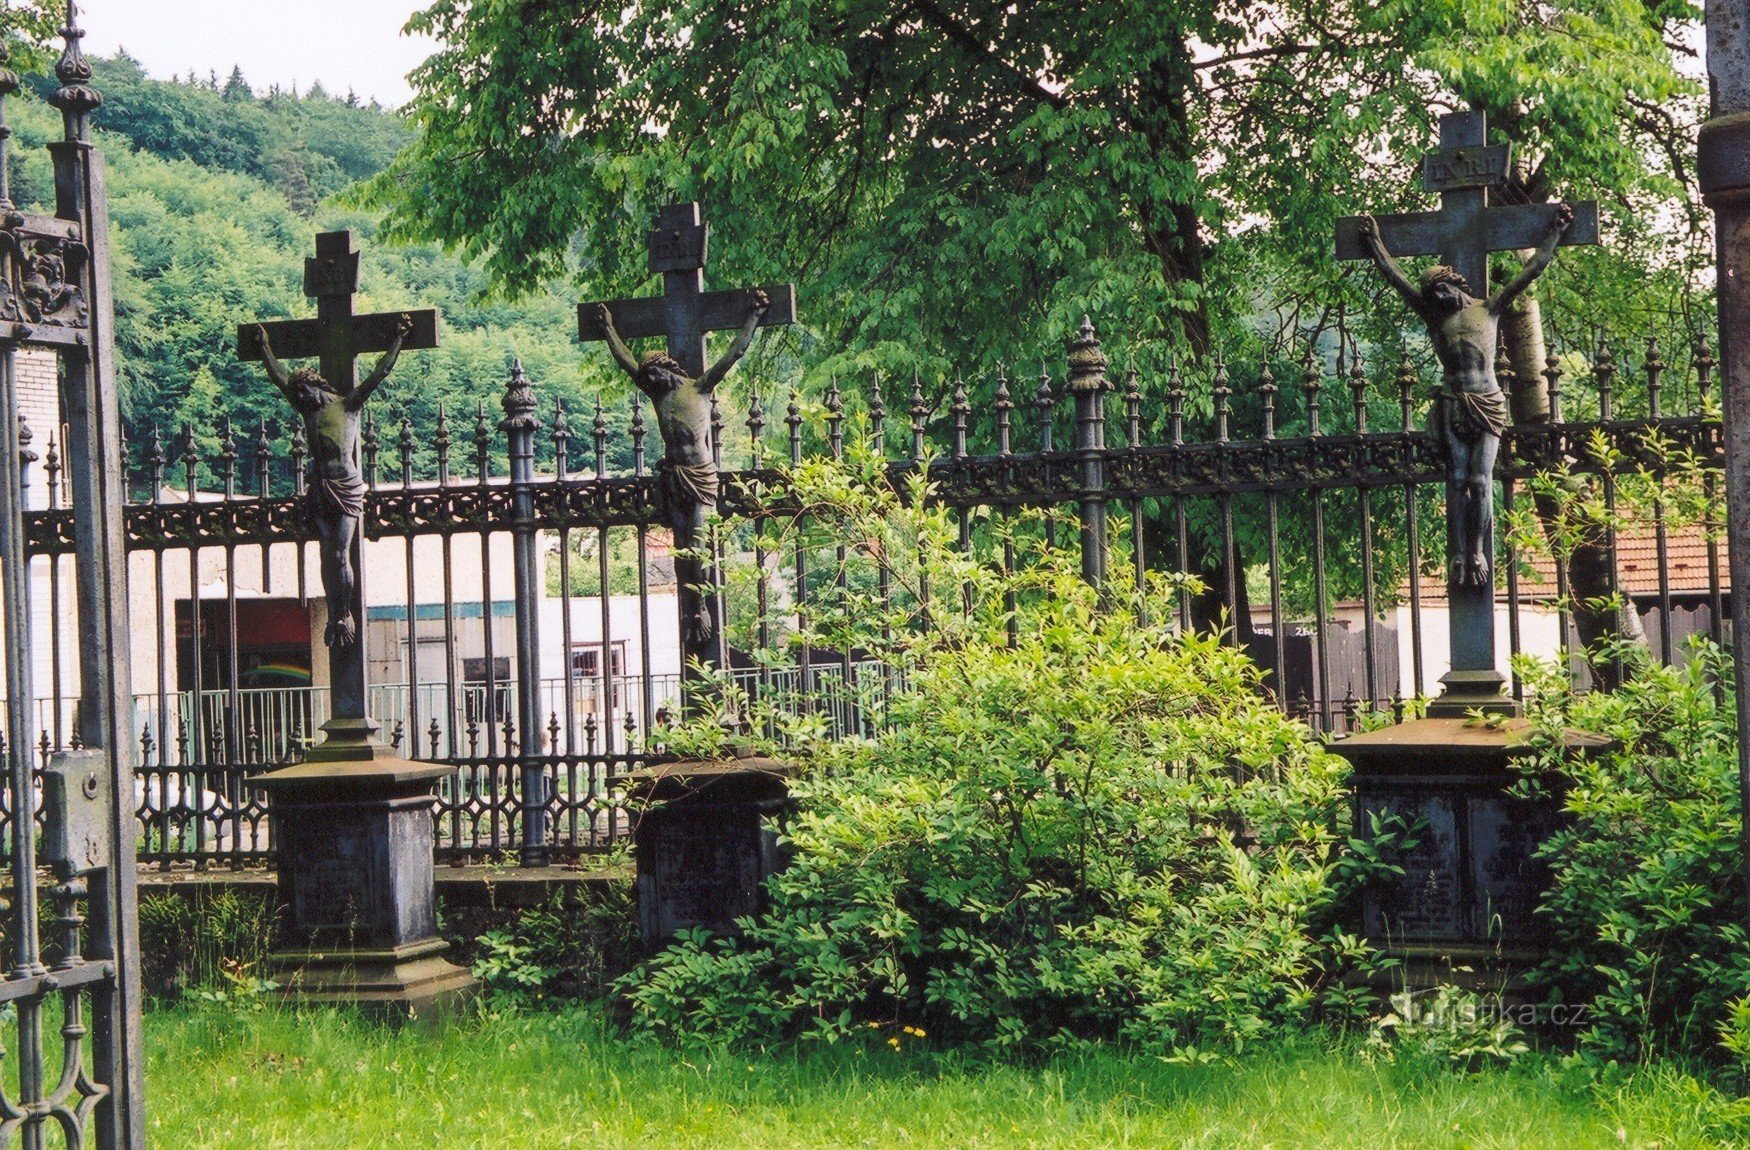 Coloana din carstul Moravian - cimitirul familiei Salm